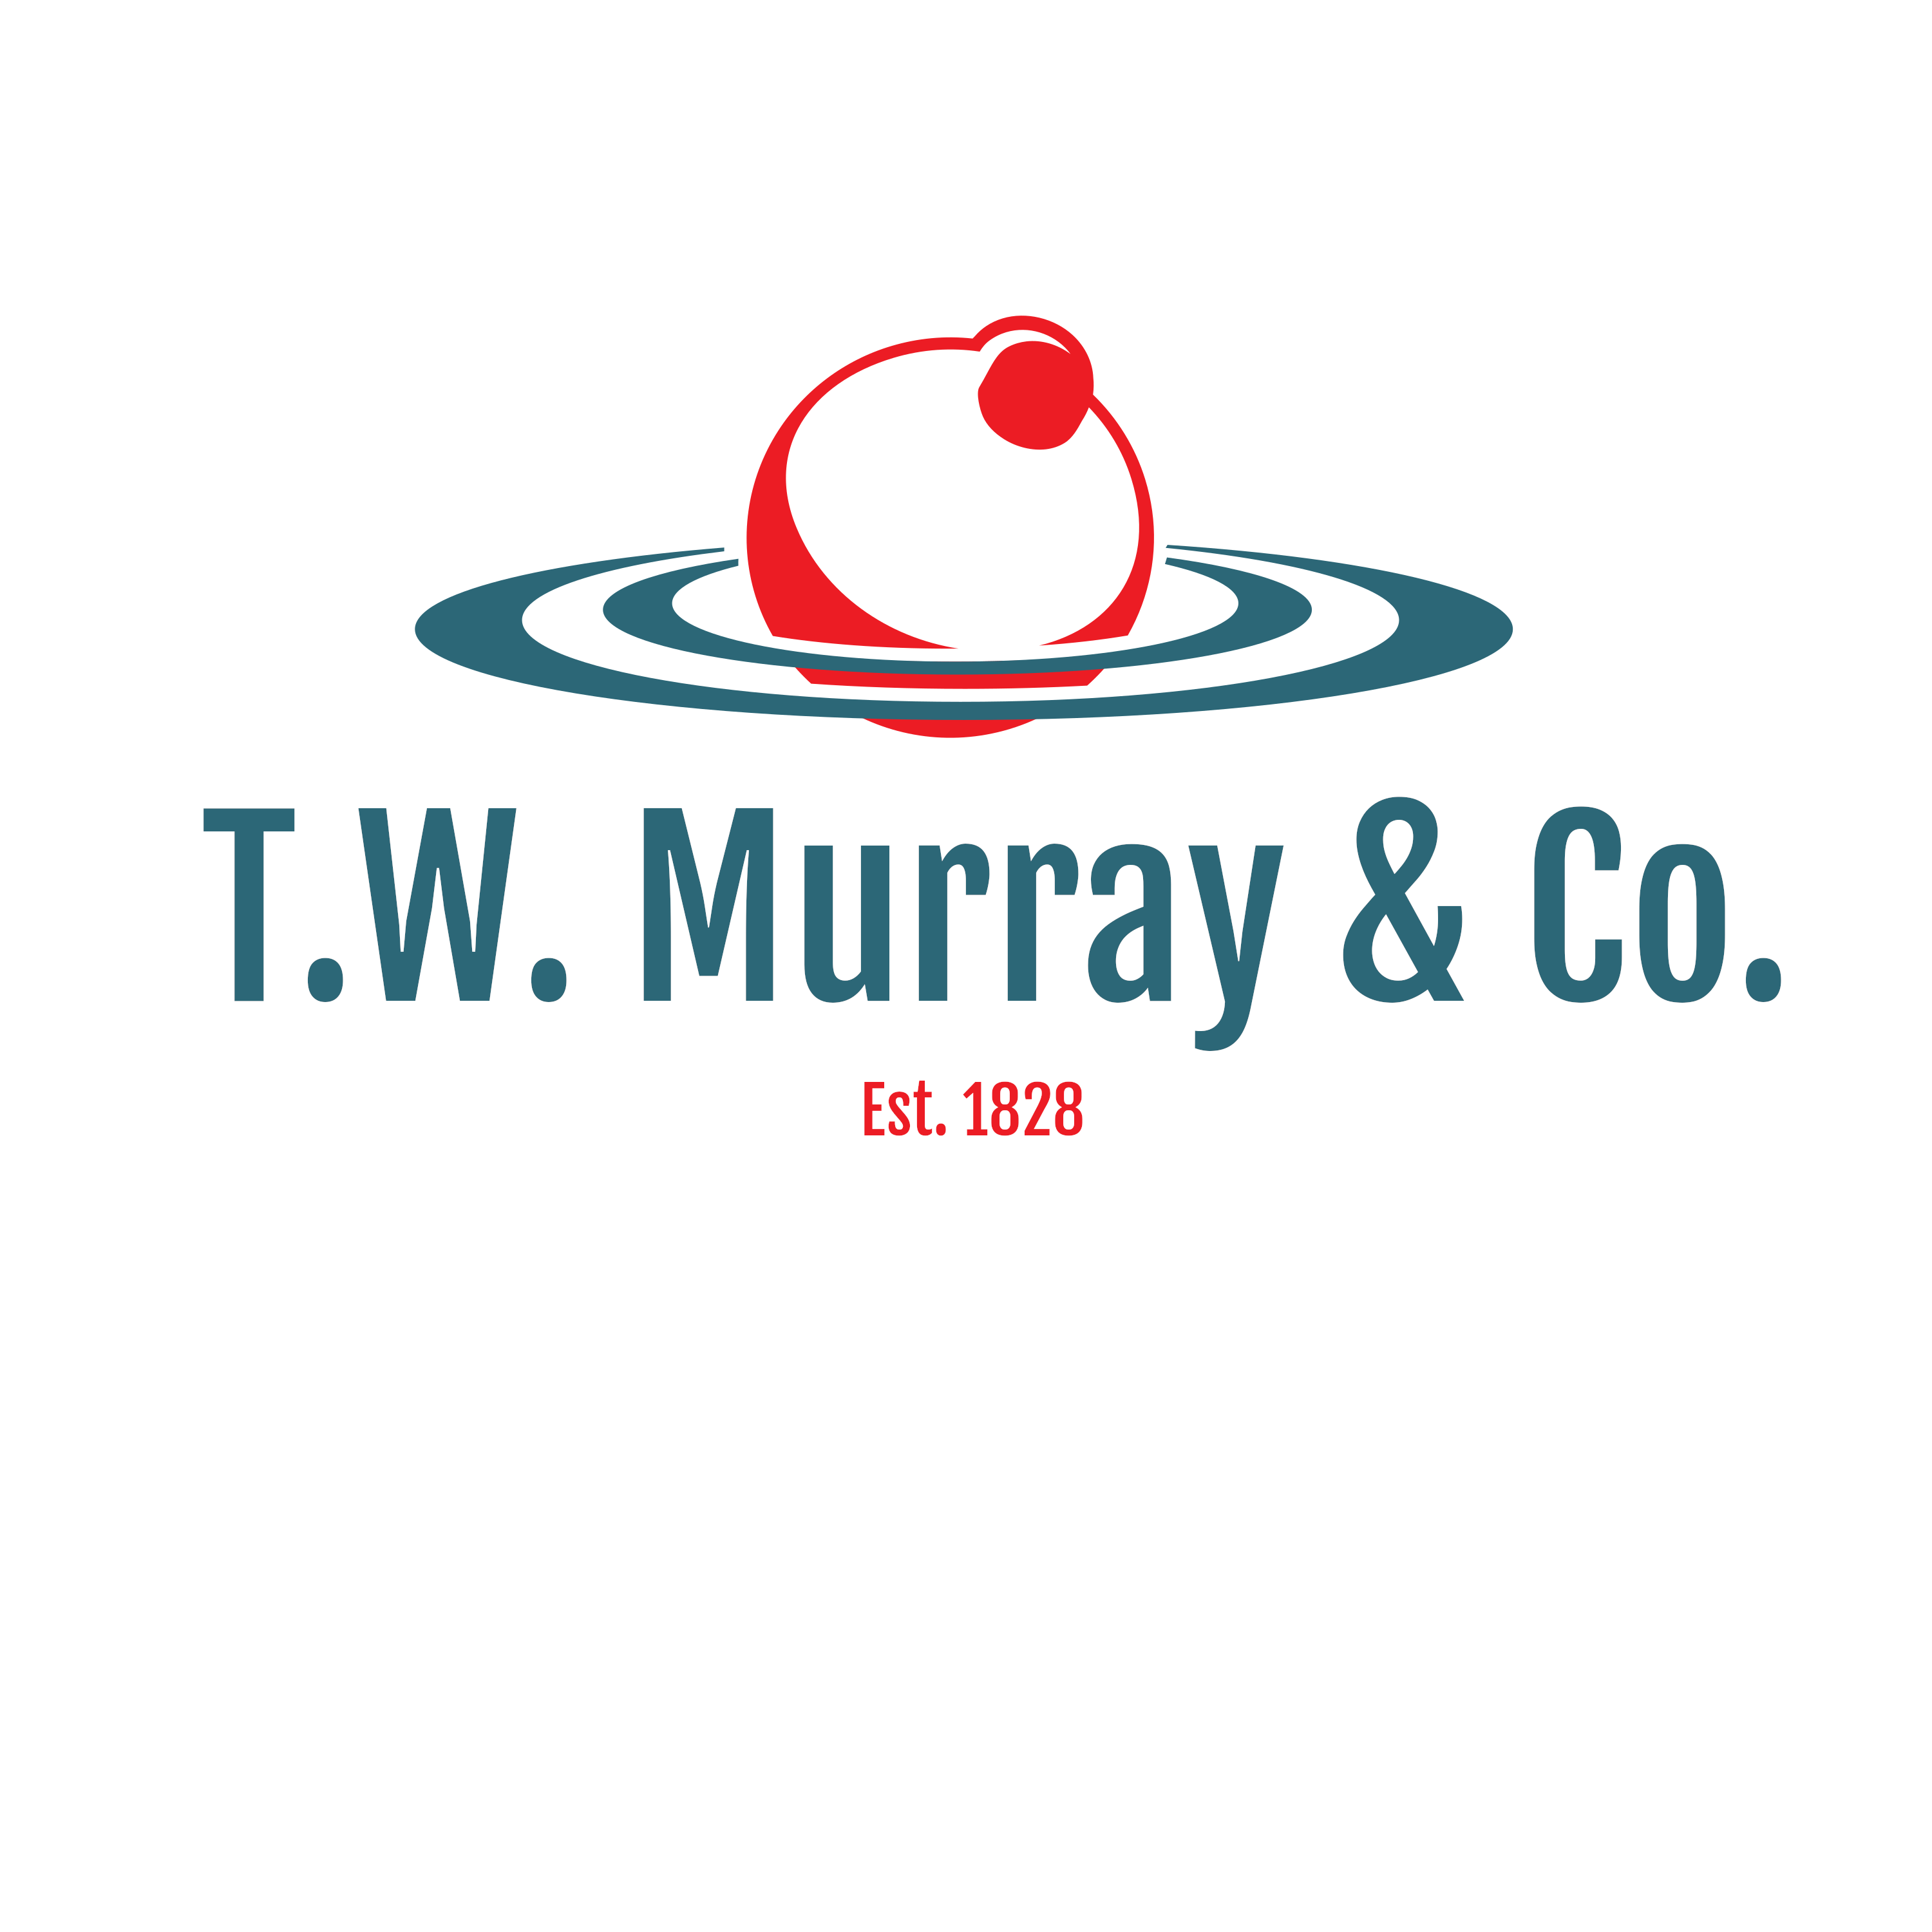 T.W. Murray & Co.